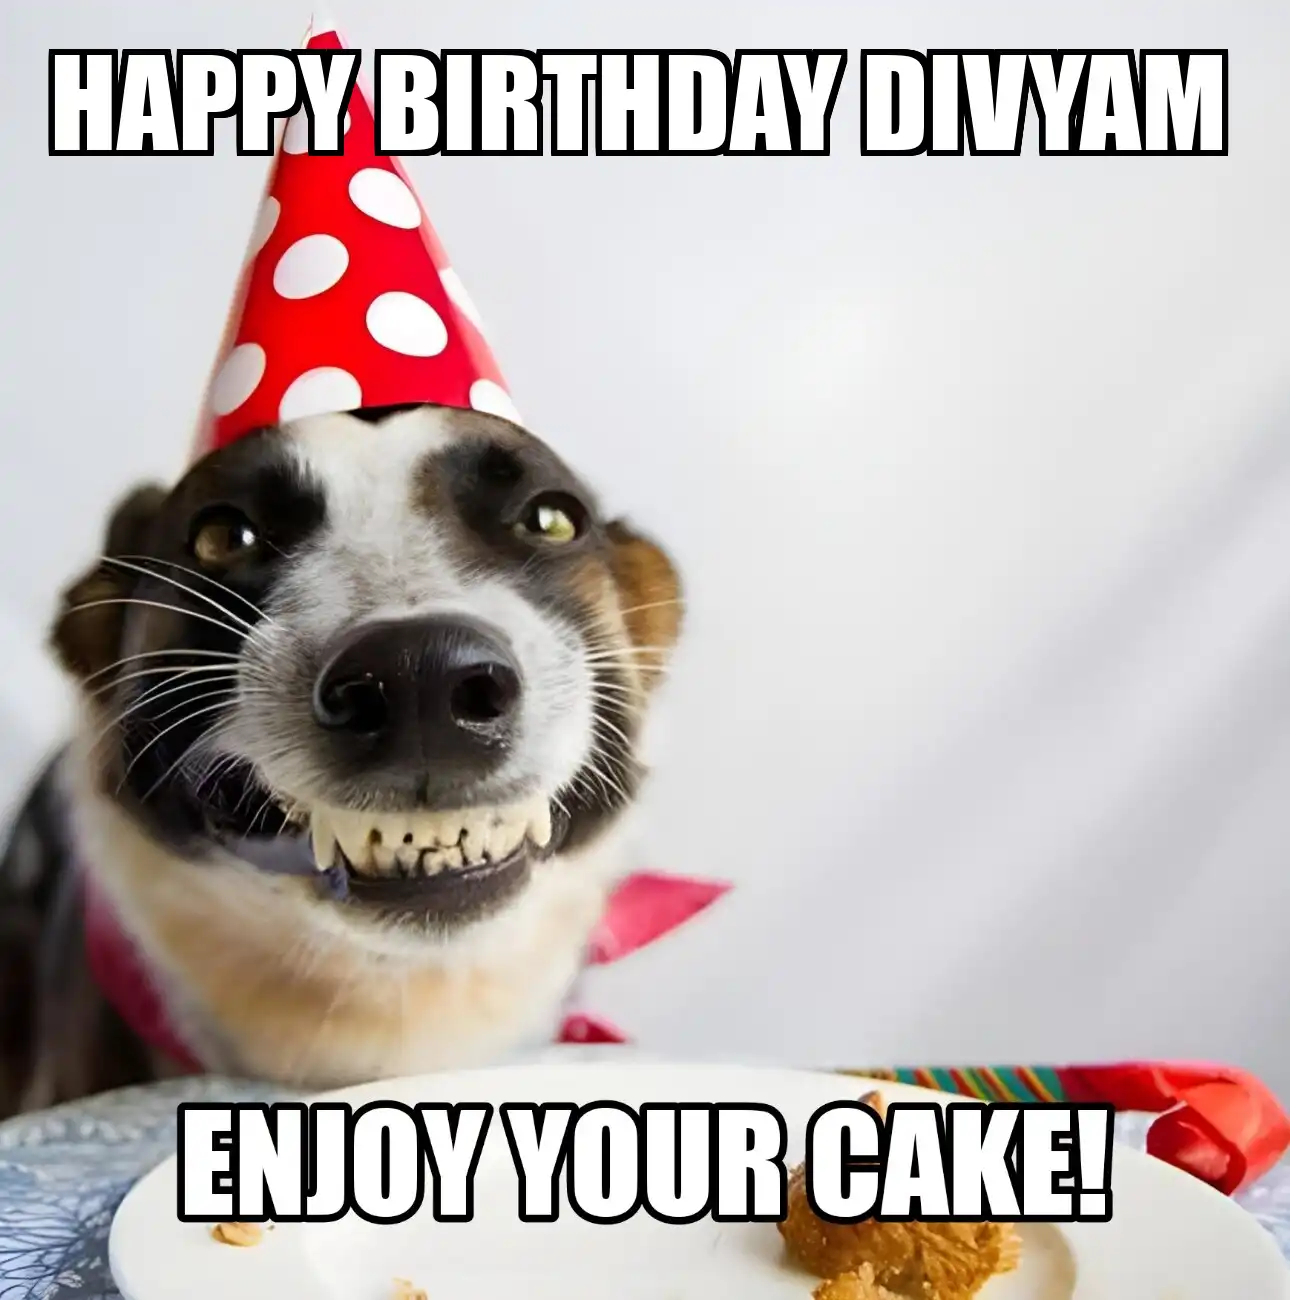 Happy Birthday Divyam Enjoy Your Cake Dog Meme